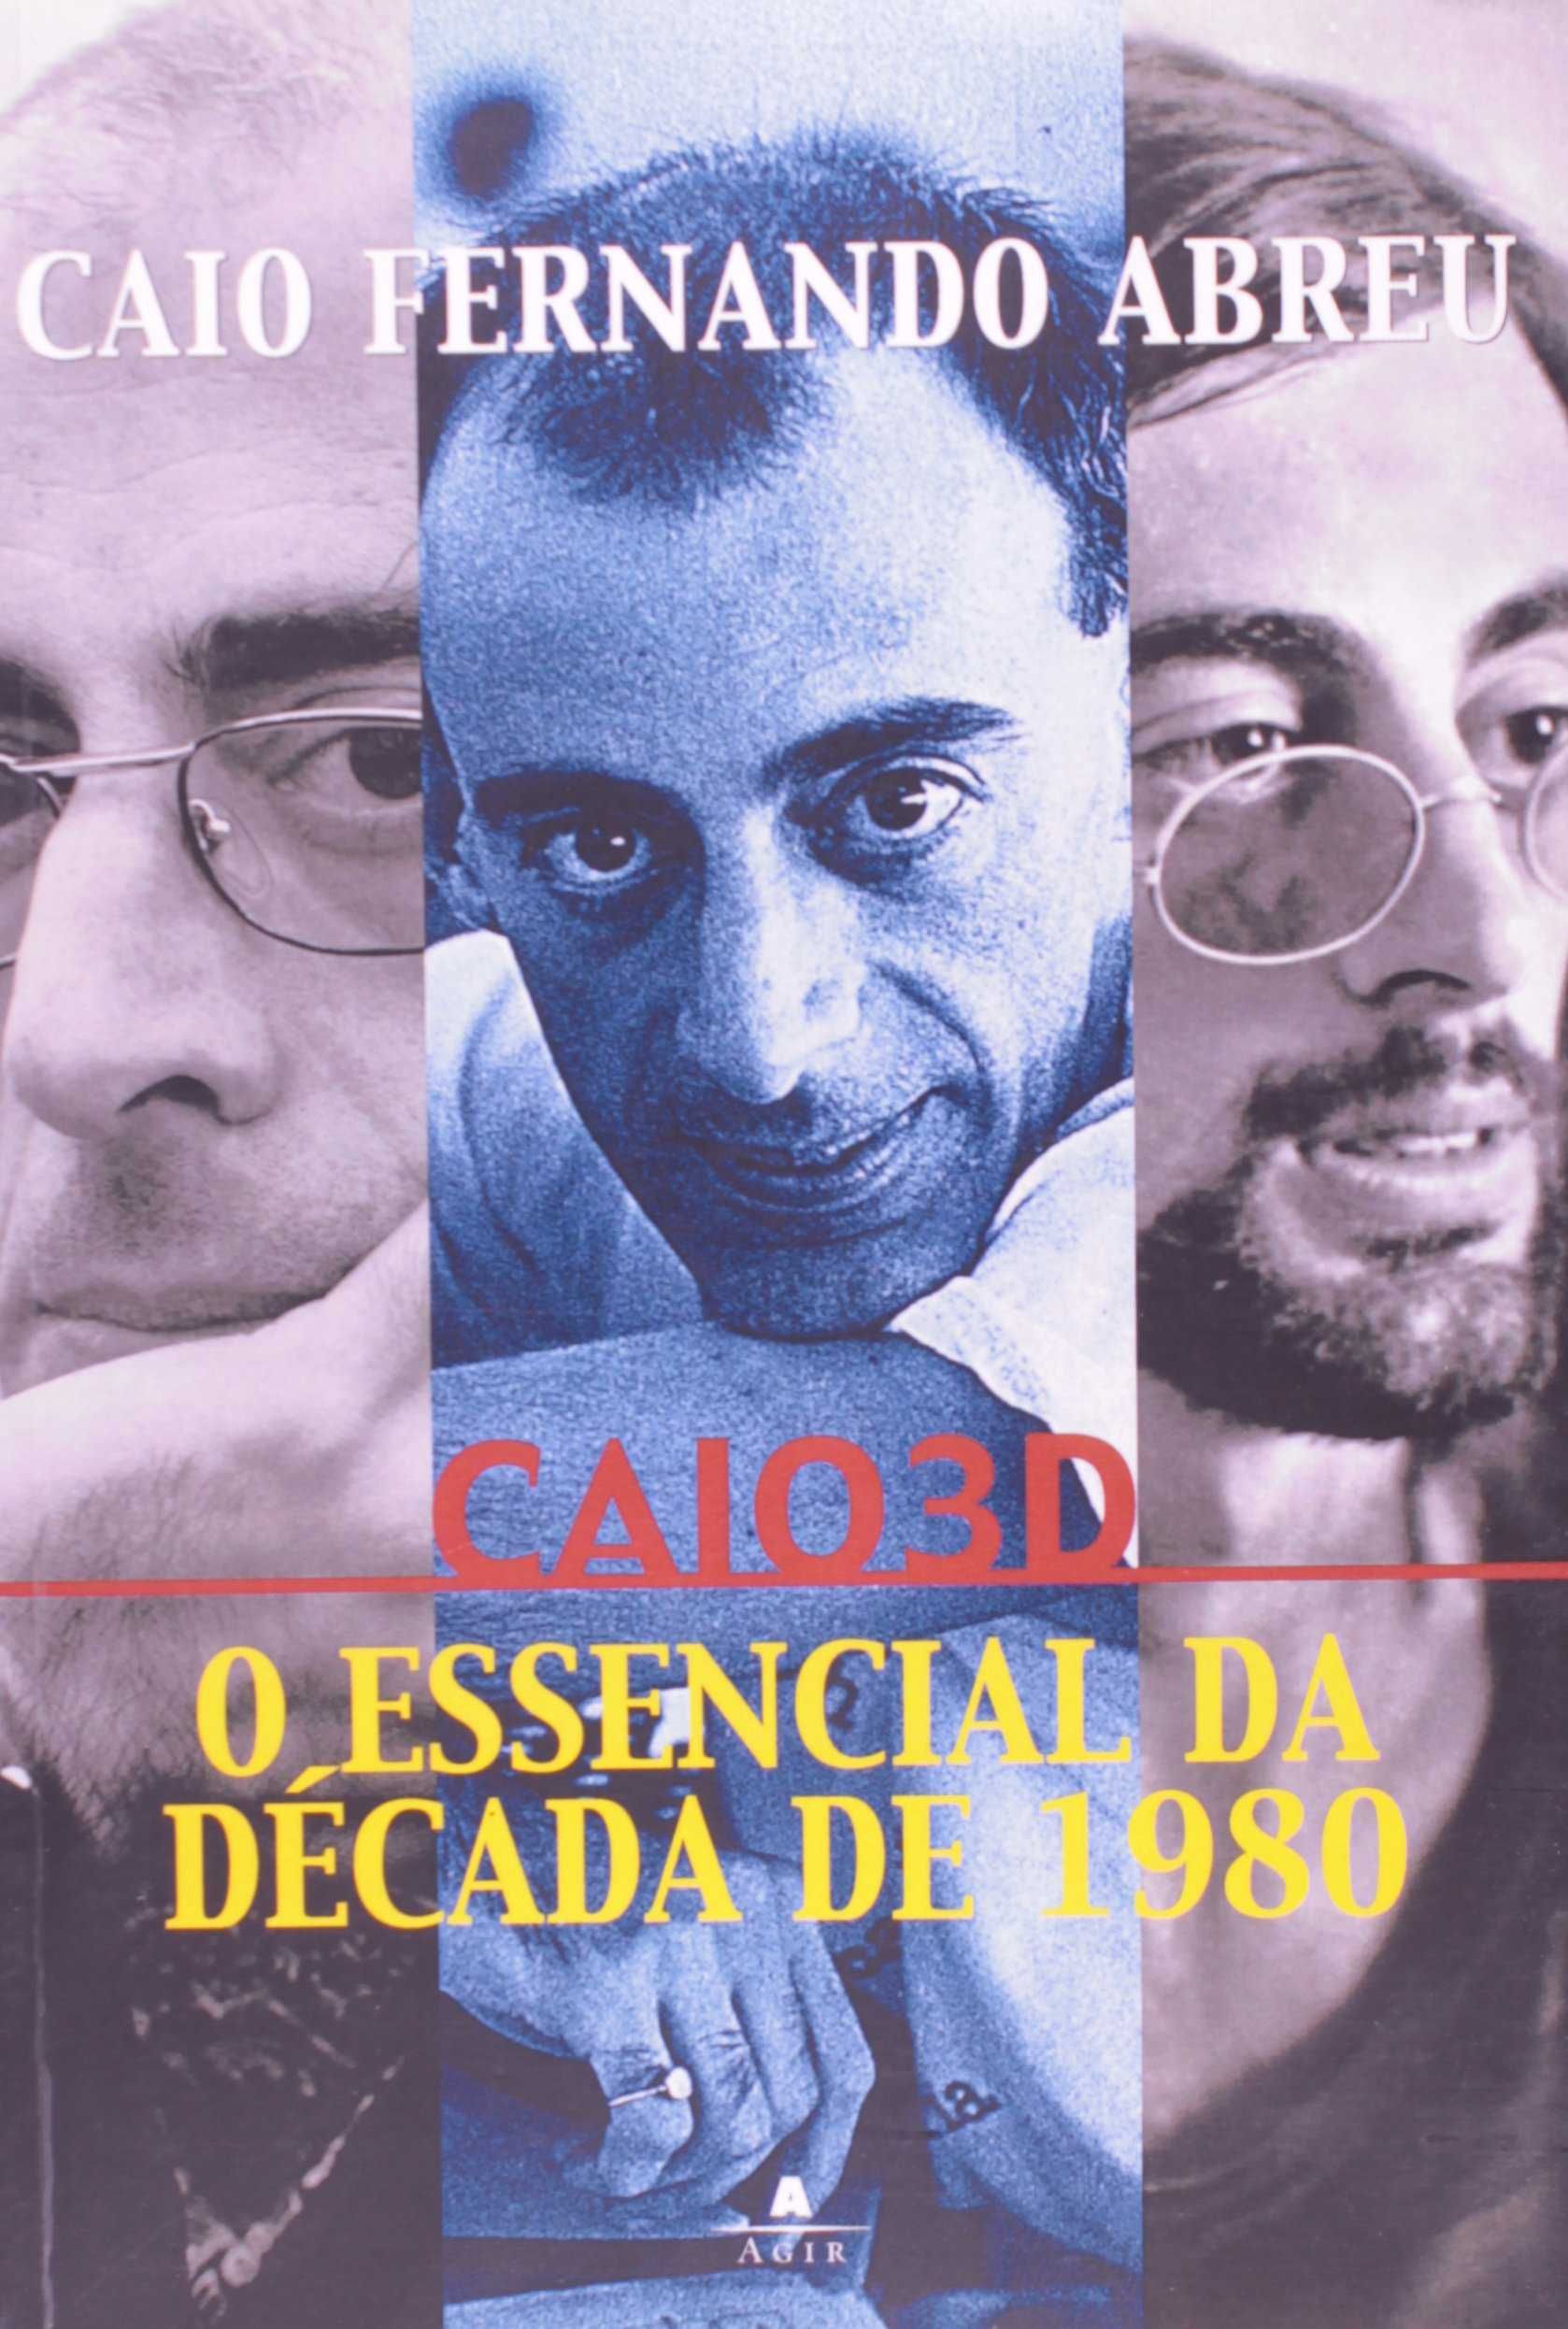 Vinicius de Moraes e Caio Fernando Abreu - Livros novos